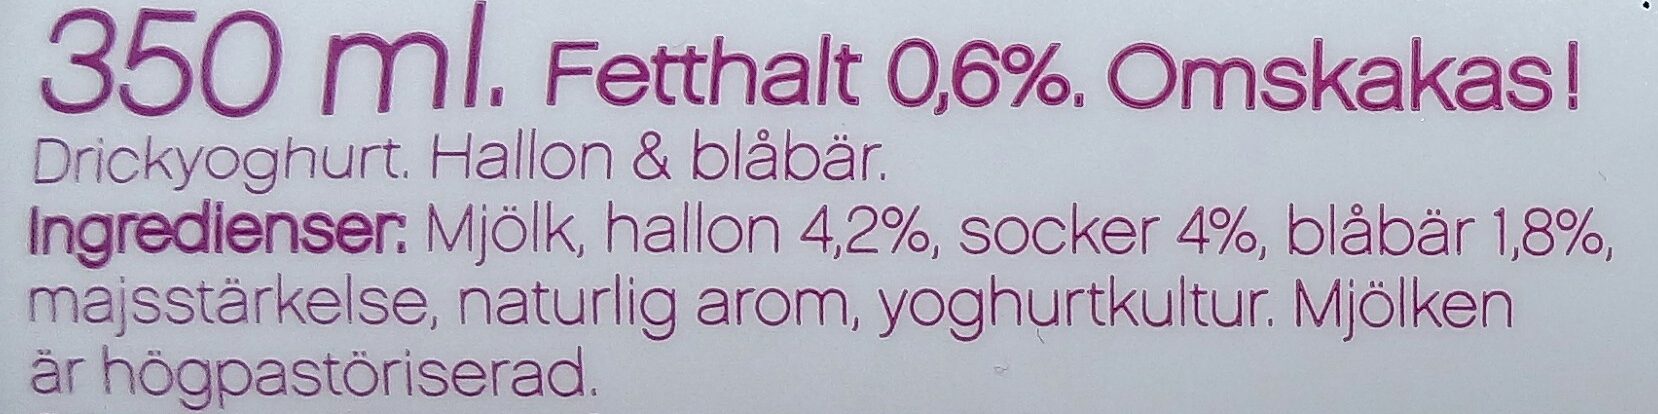 Yoggi yalla! Drickyoghurt Hallon Blåbär - Ingredienser